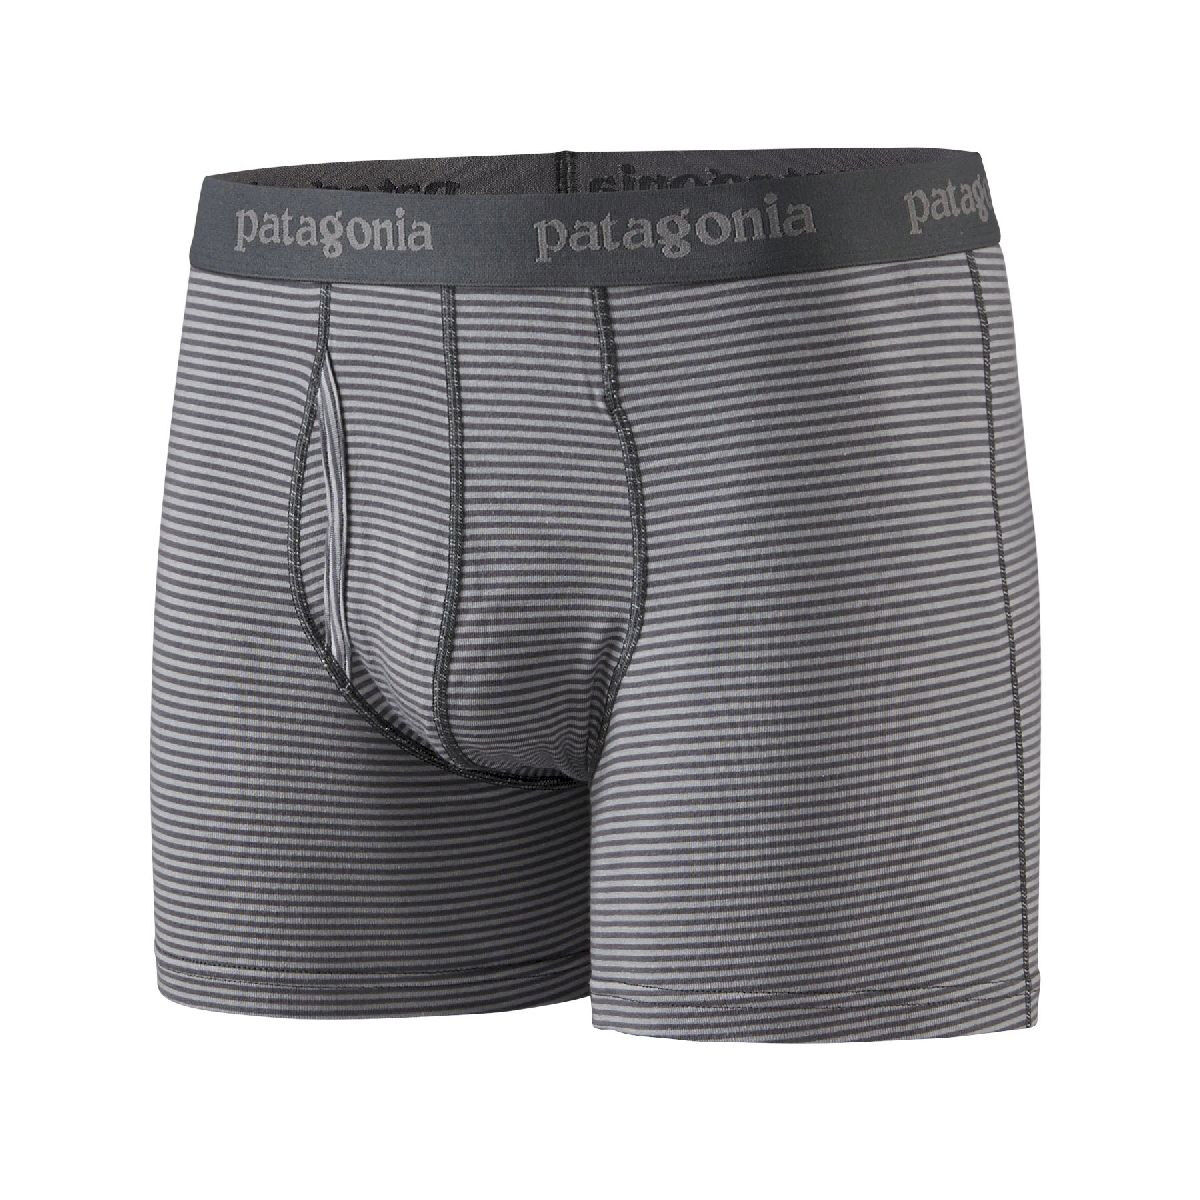 Patagonia Essential Boxer Briefs - 3" - Underwear - Men's